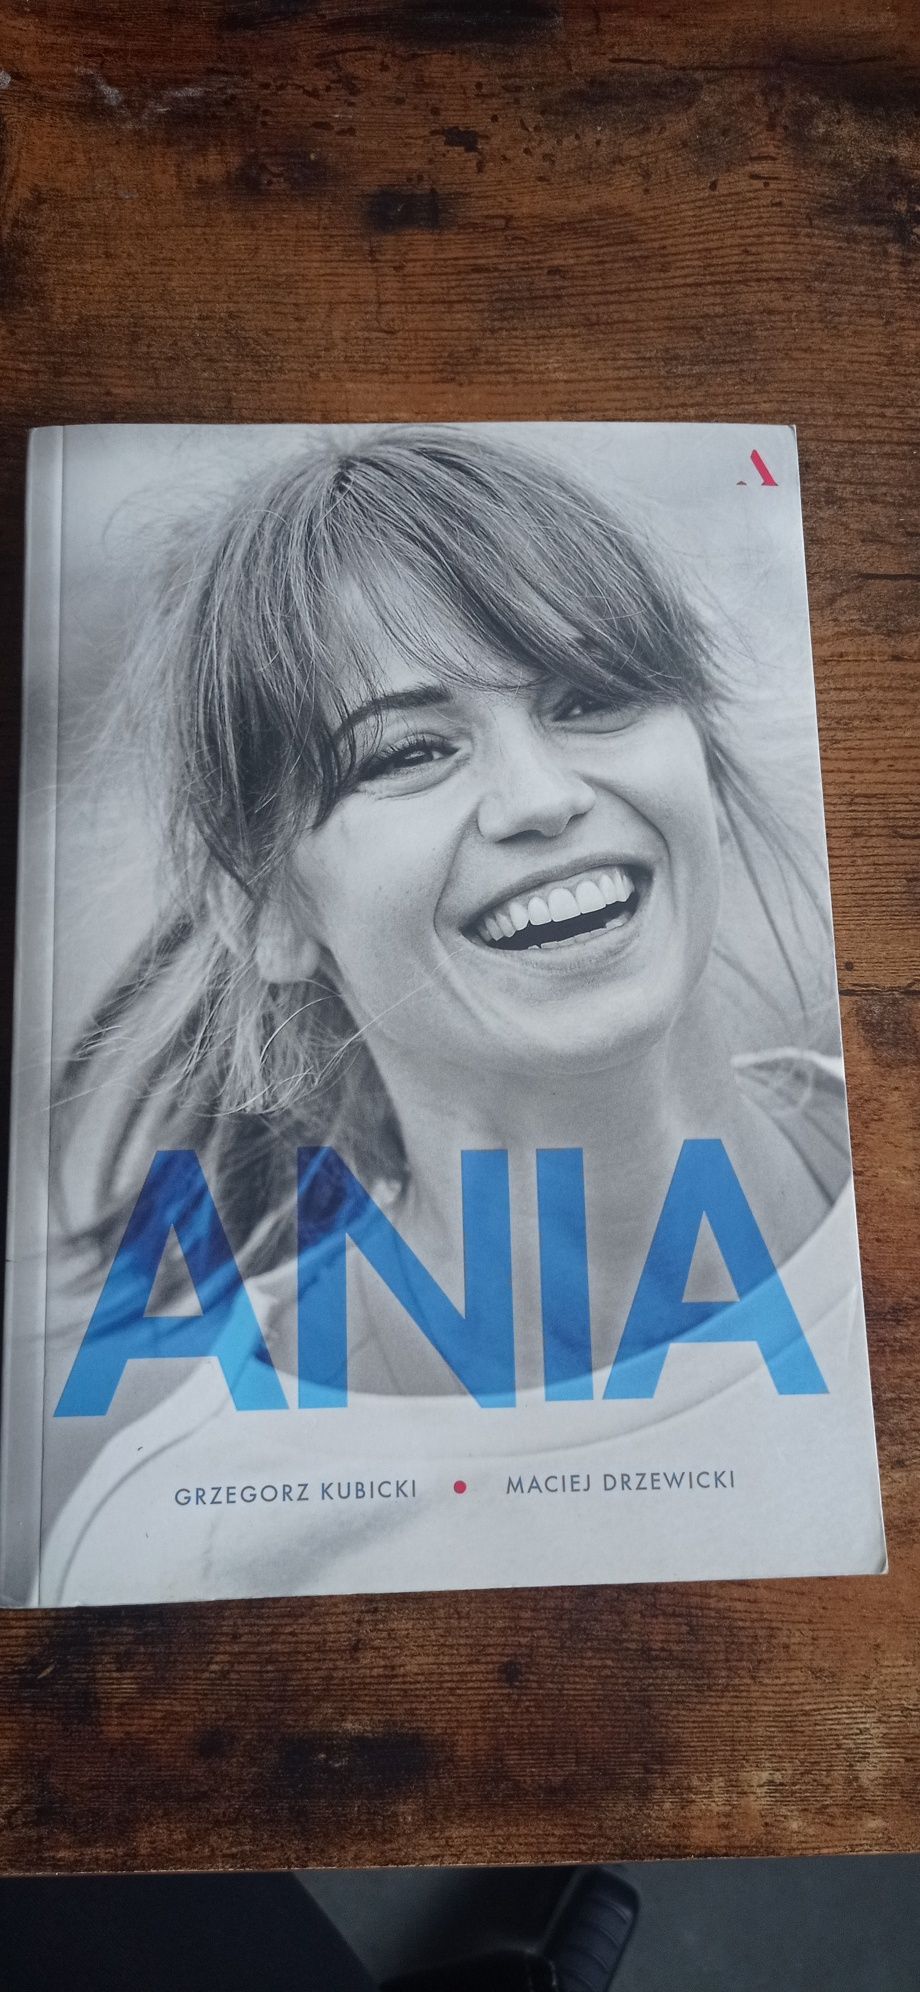 Książka biografia Ania Przybylska